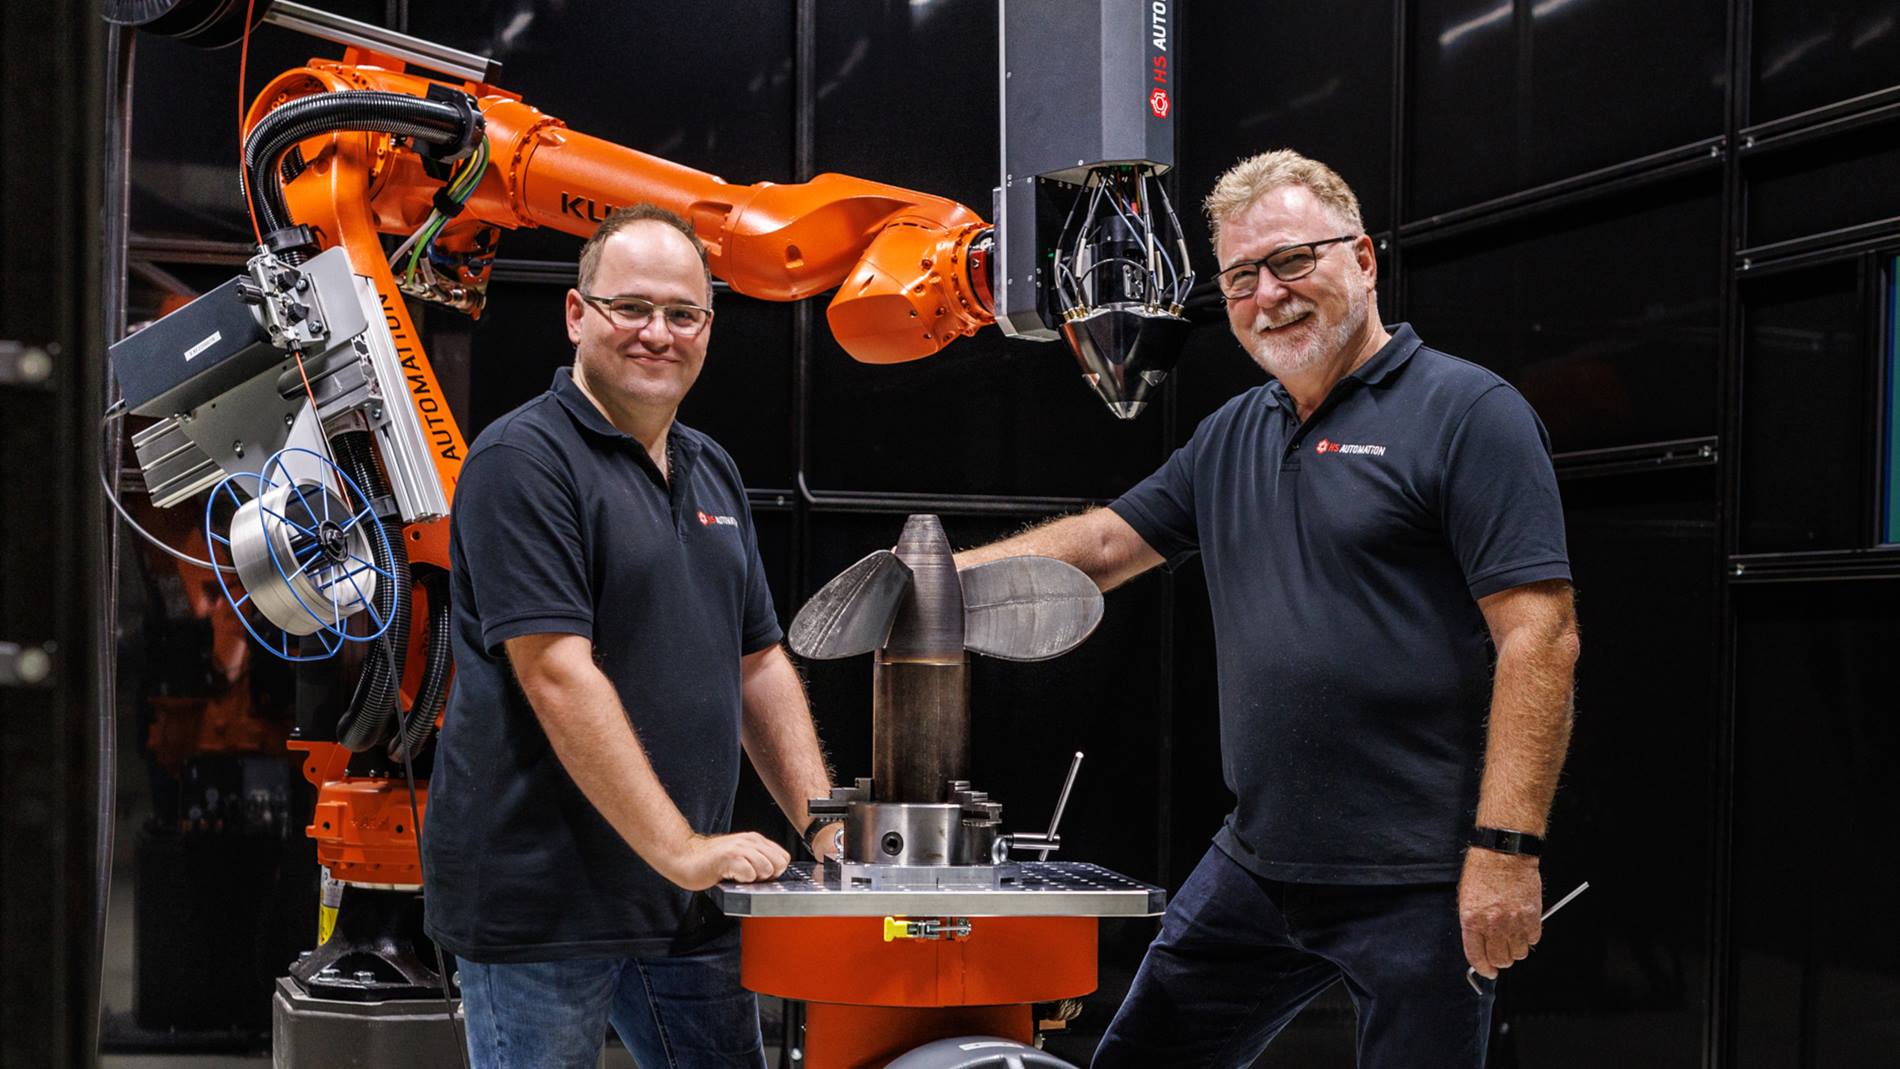 Die Geschäftsführer Marc und Rolf Steidinger eröffnen mit dem Metall-3D-Drucker vor allem dem Mittelstand neue Fertigungsperspektiven.